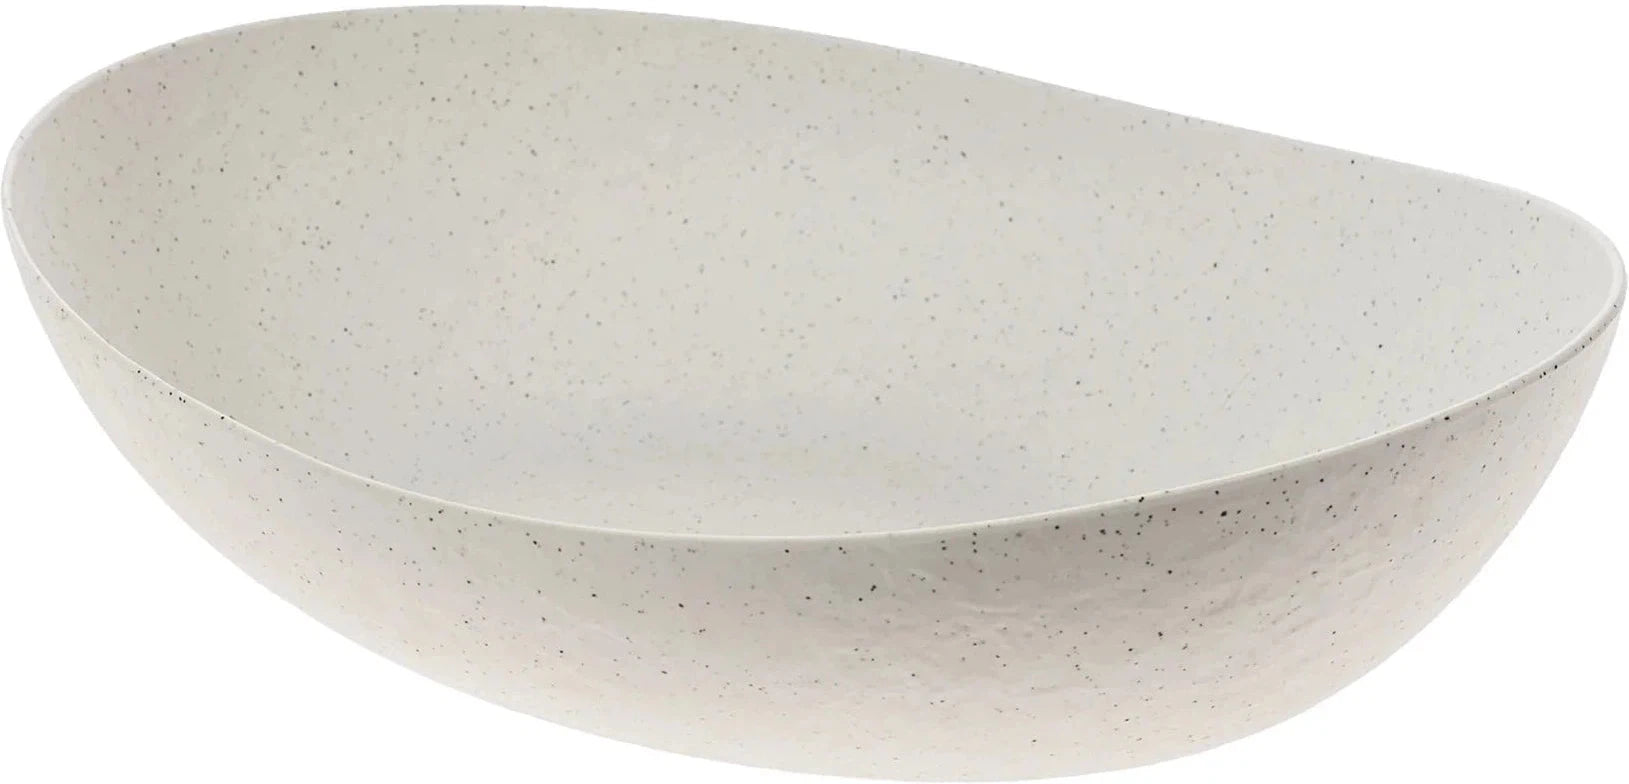 Cheforward - Emerge 128.5 Oz Stone Natural Extra Large Bowl - ERG100